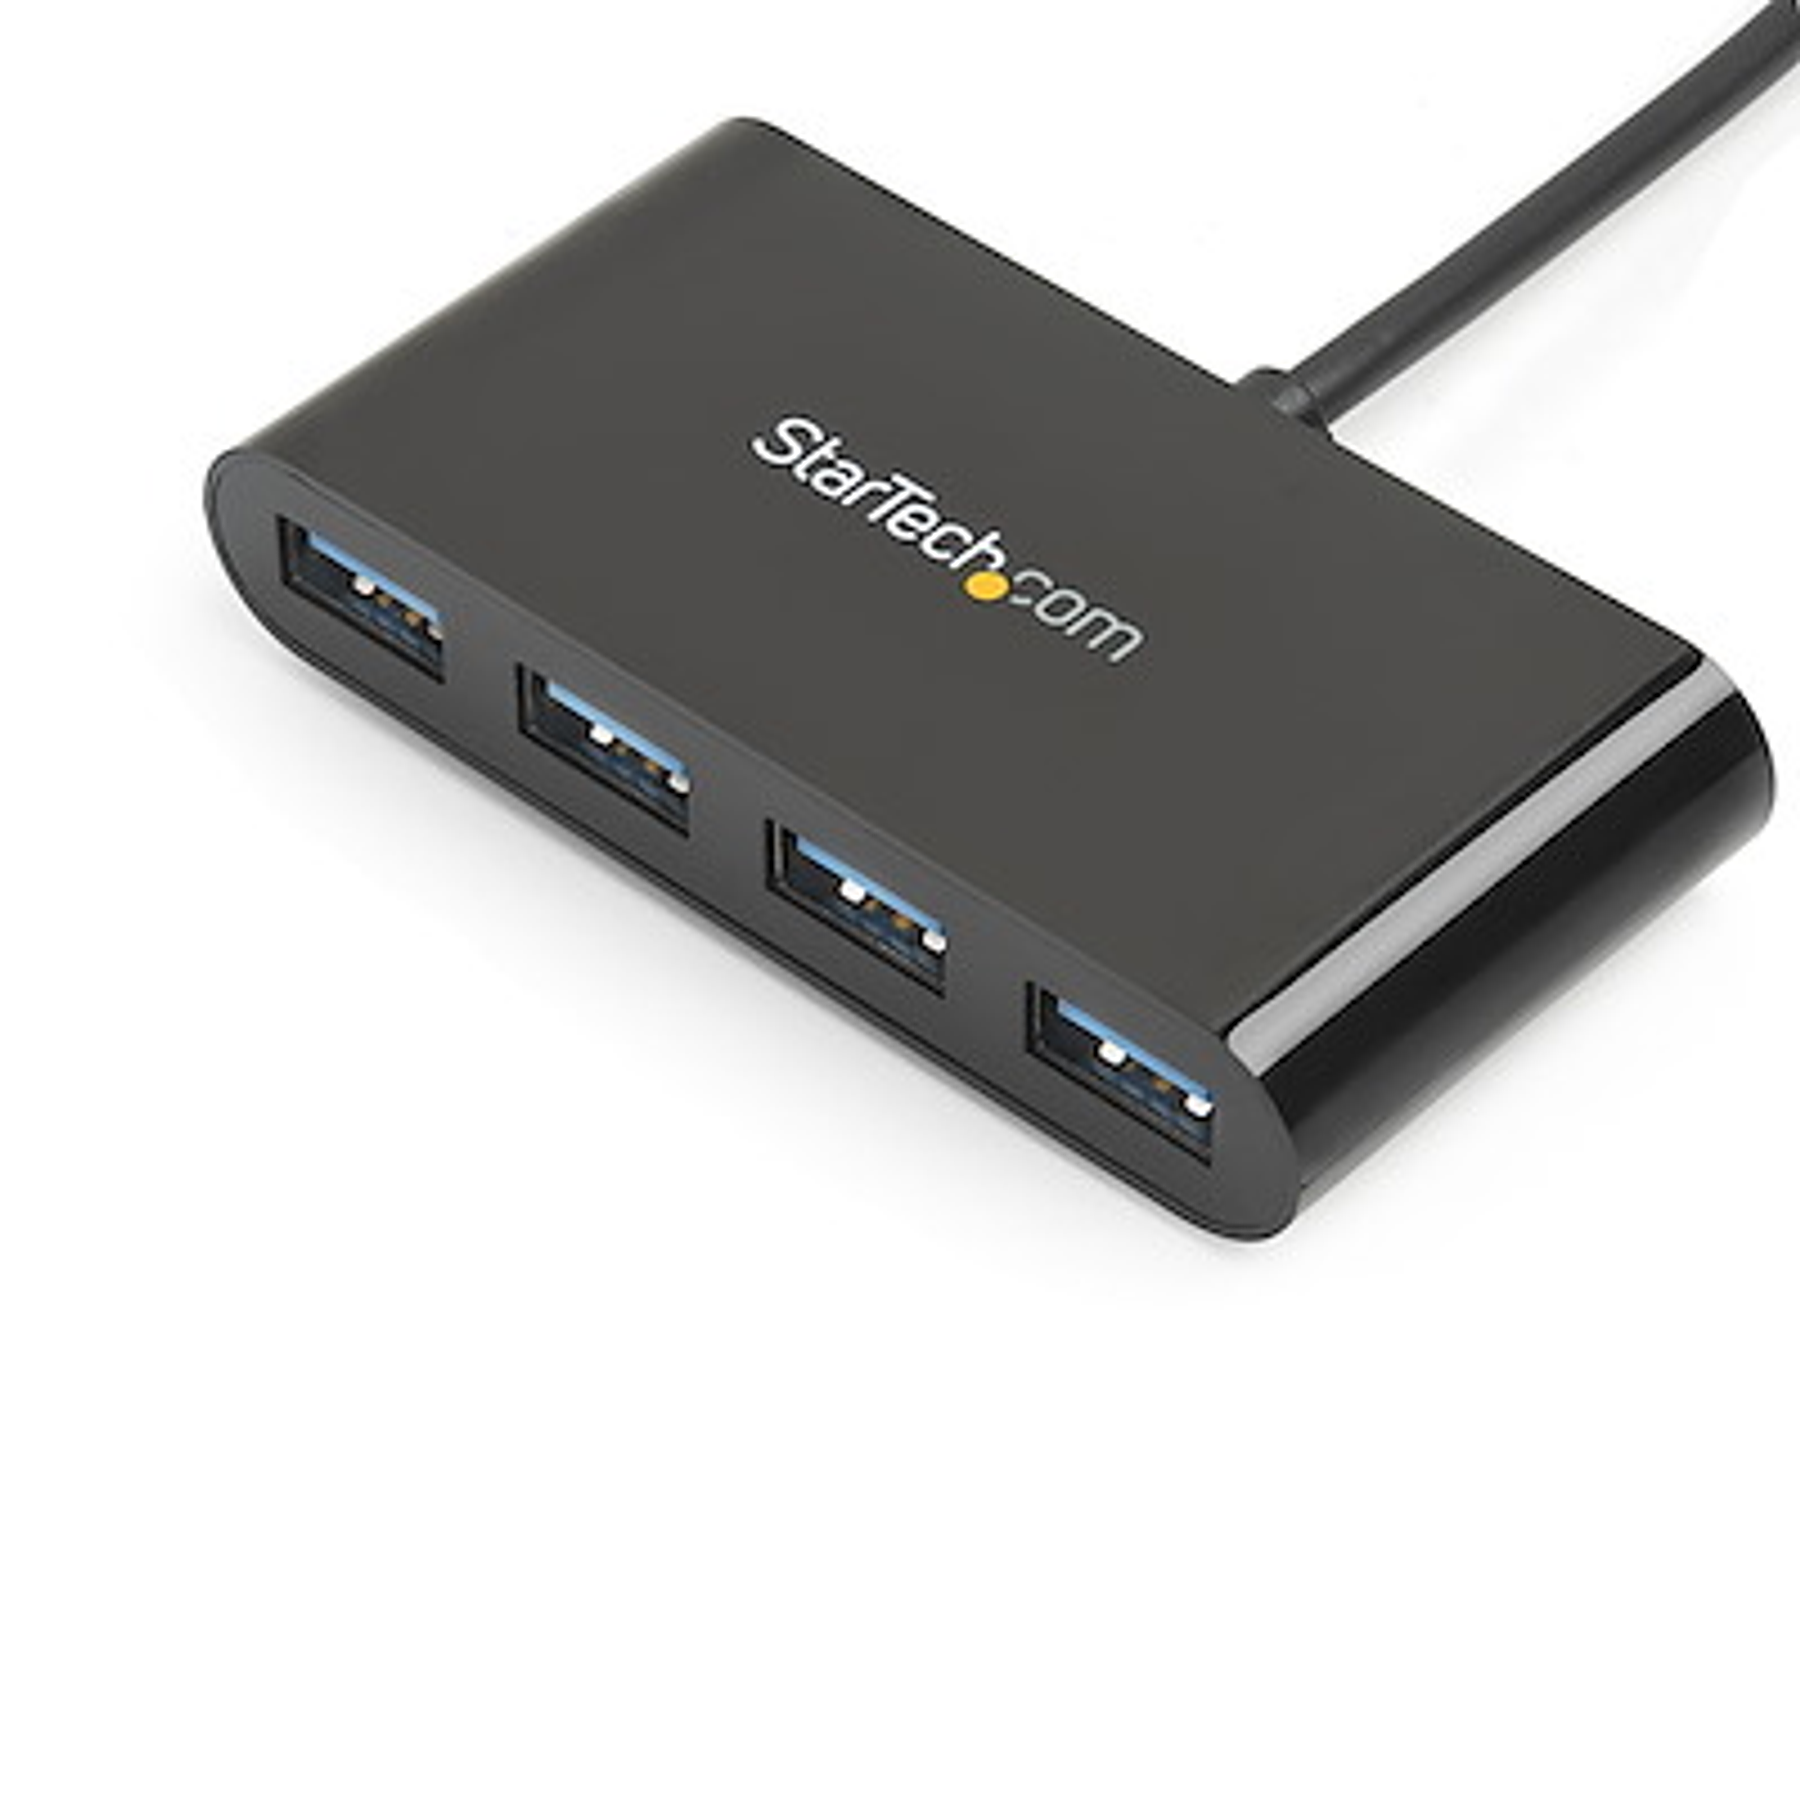 StarTech Hub Concentrador USB 3.0 de 4 Puertos Ladrón USB-C